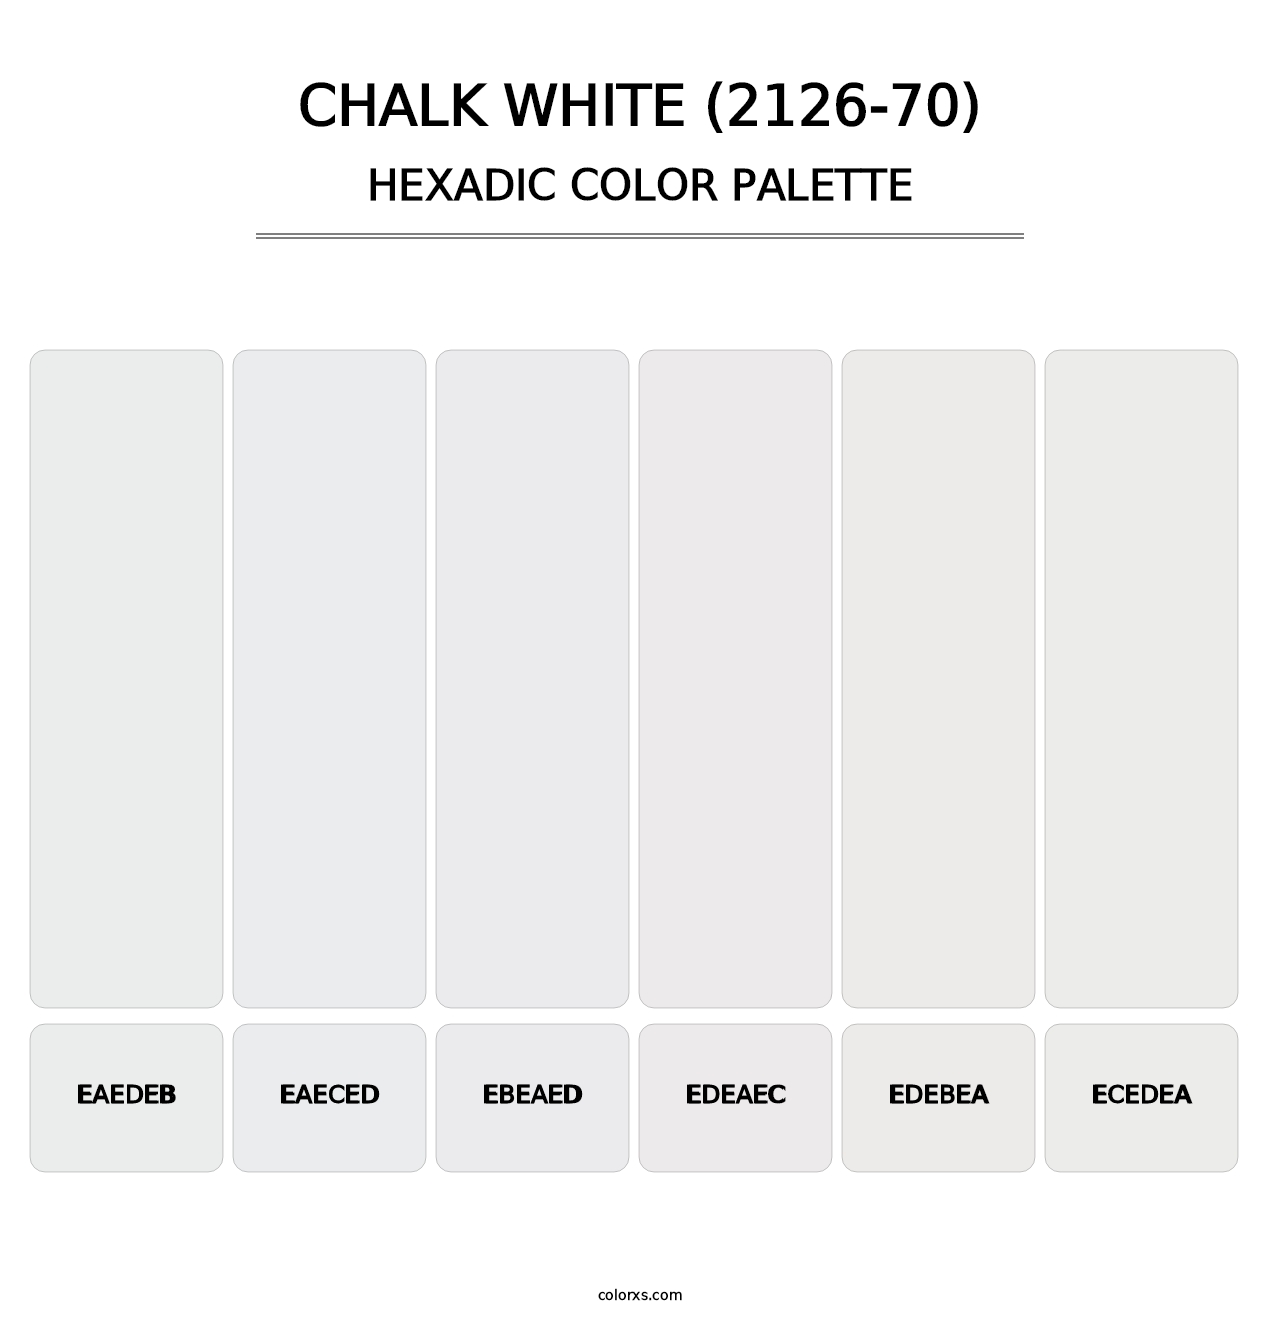 Chalk White (2126-70) - Hexadic Color Palette